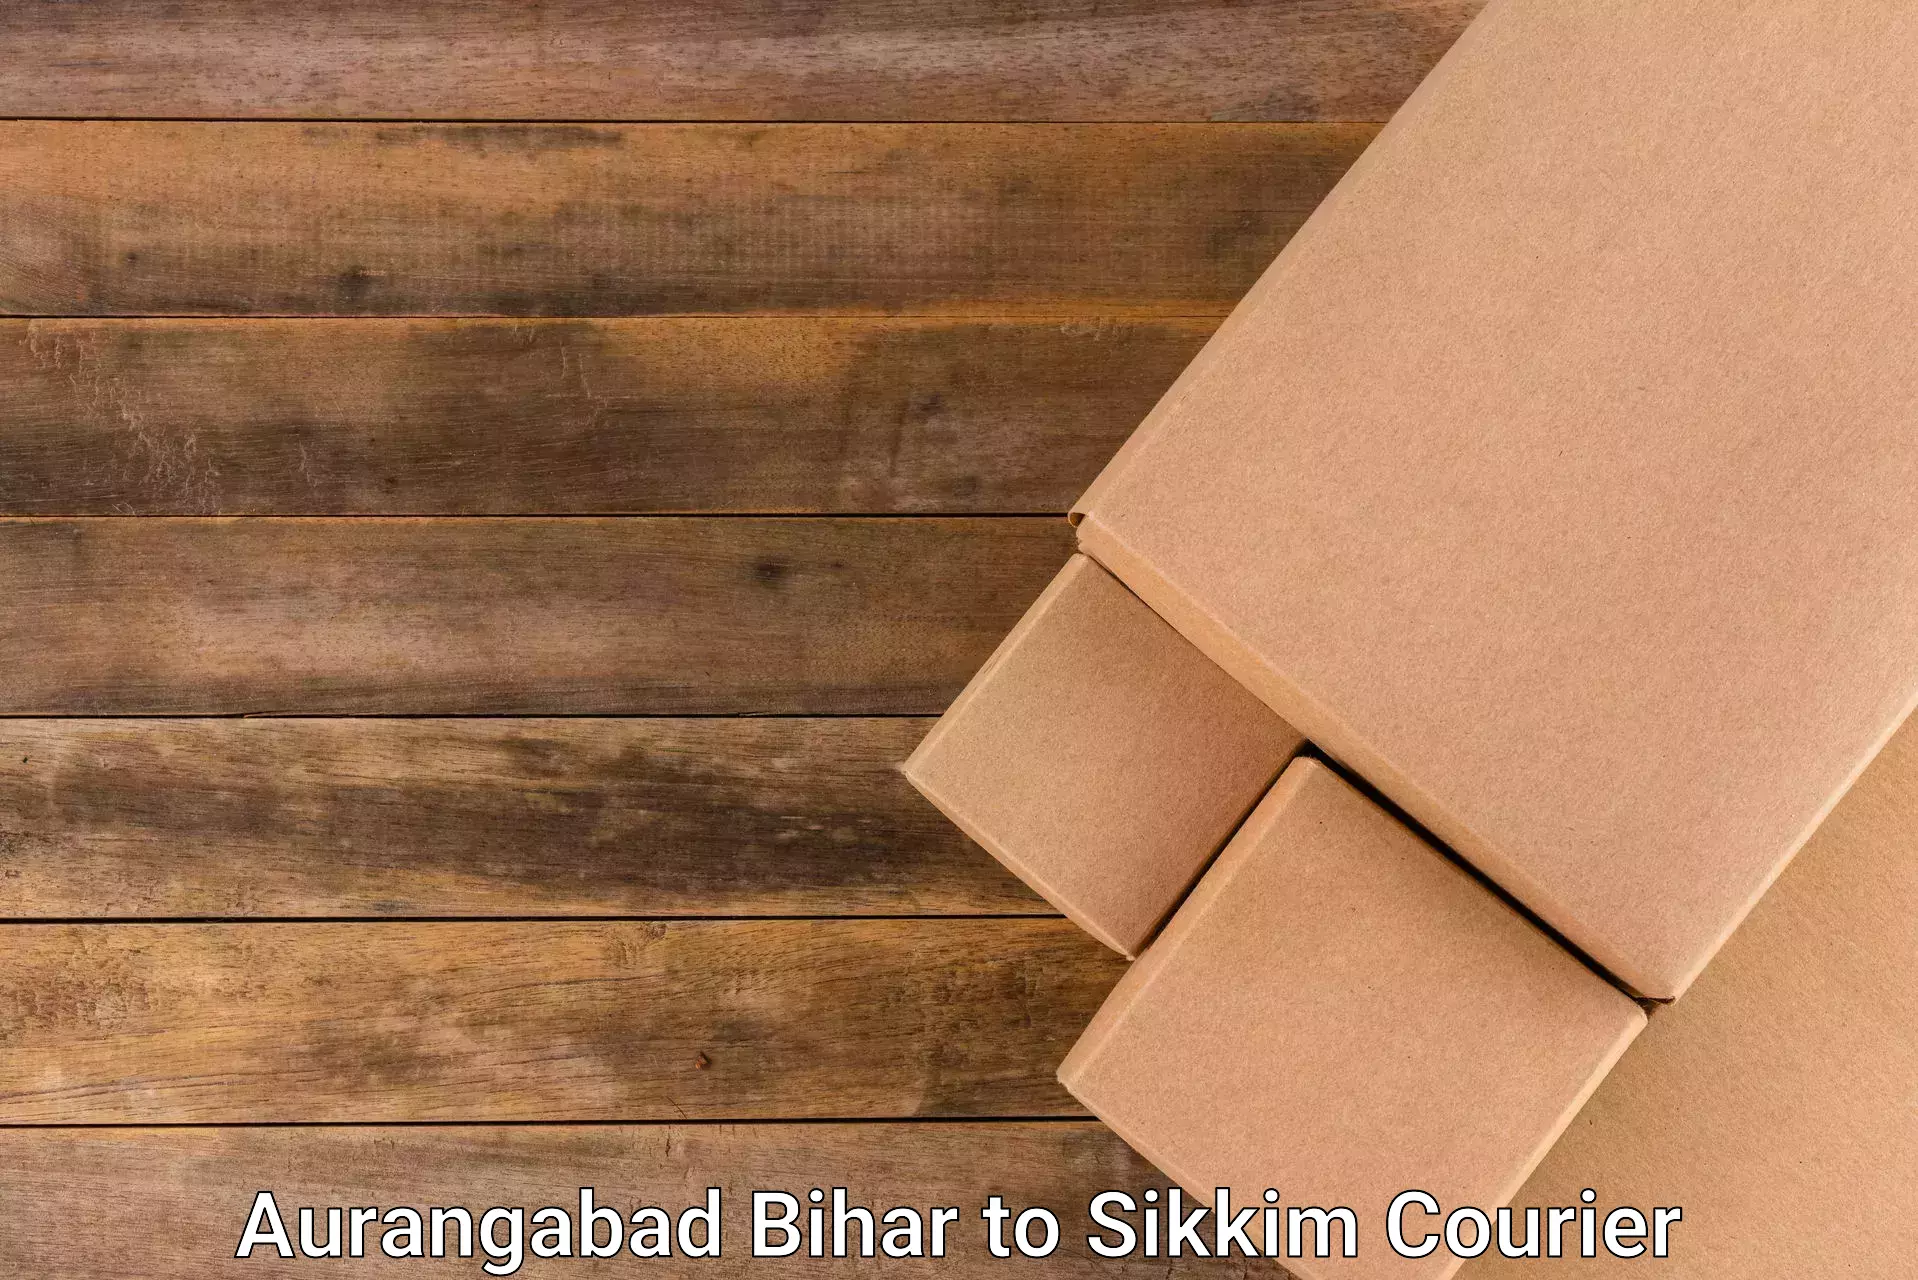 Premium courier services Aurangabad Bihar to North Sikkim